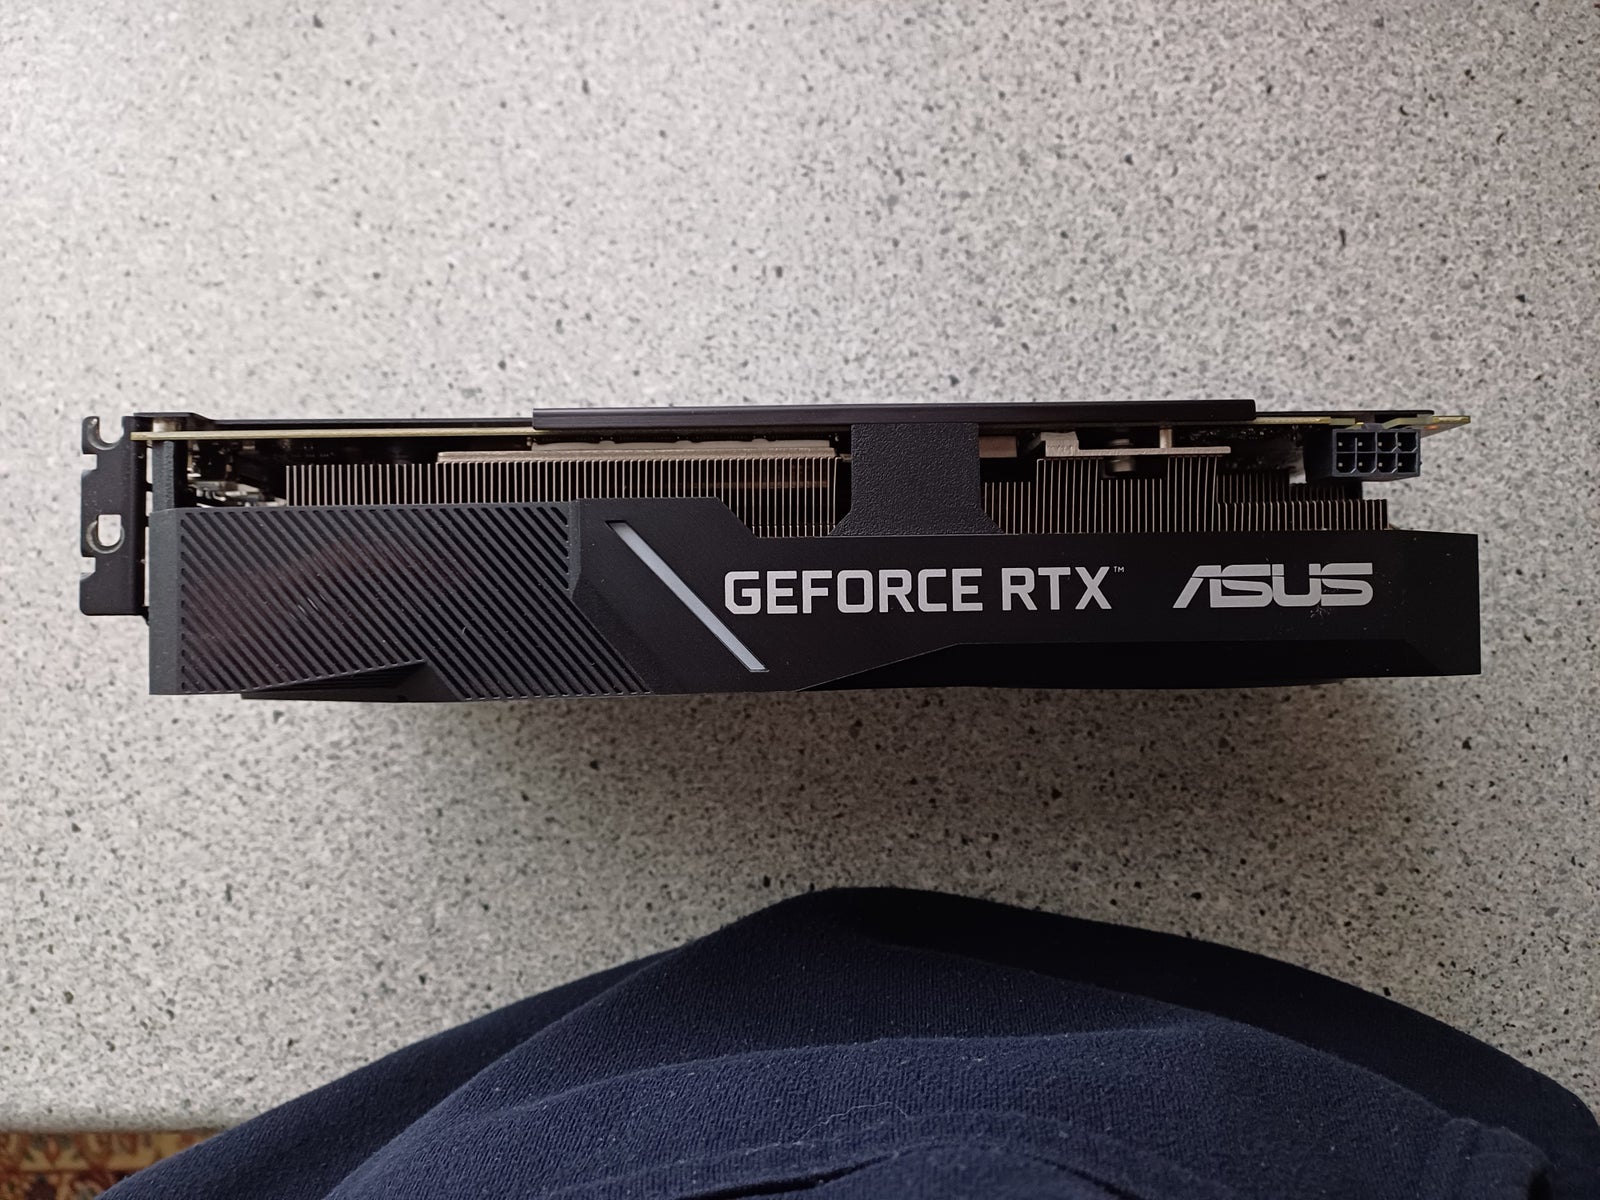 GeForce RTX 2060 super asus, 8 GB RAM, Perfekt